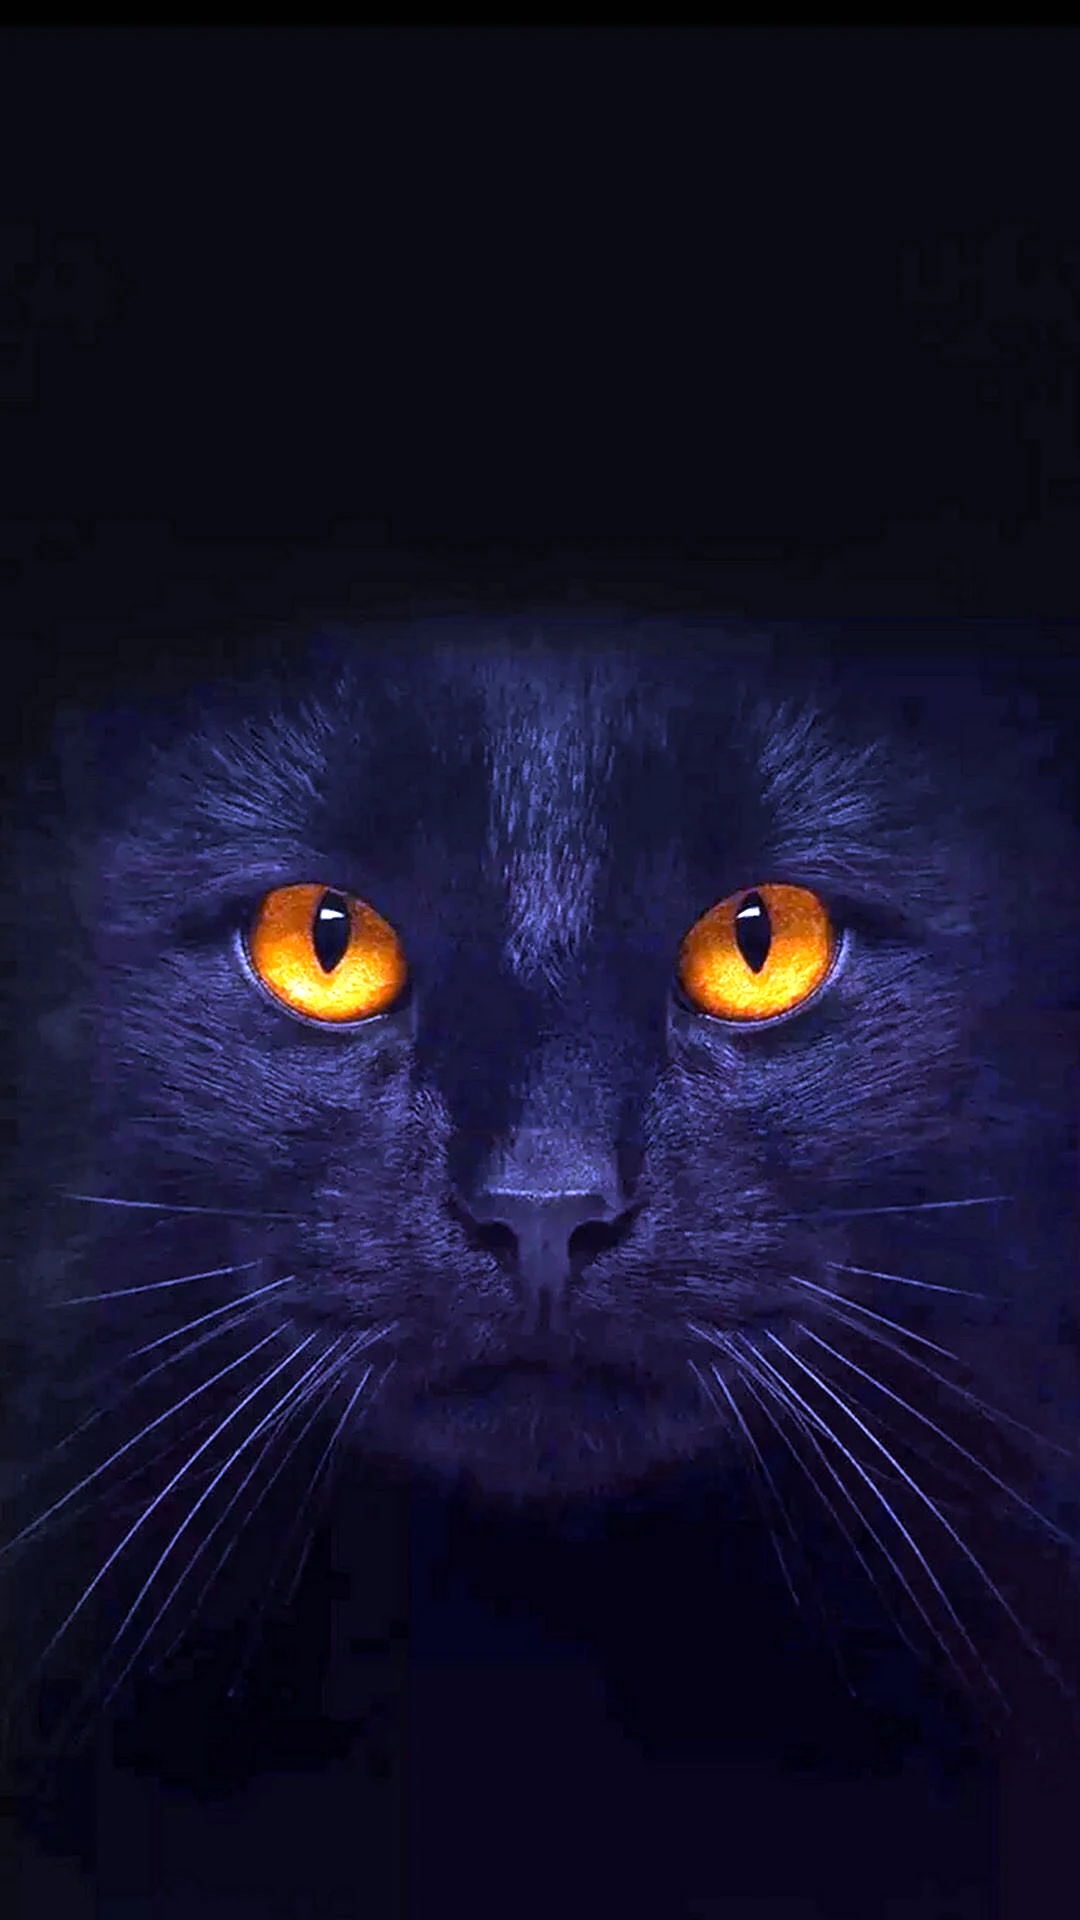 Морда черной кошки